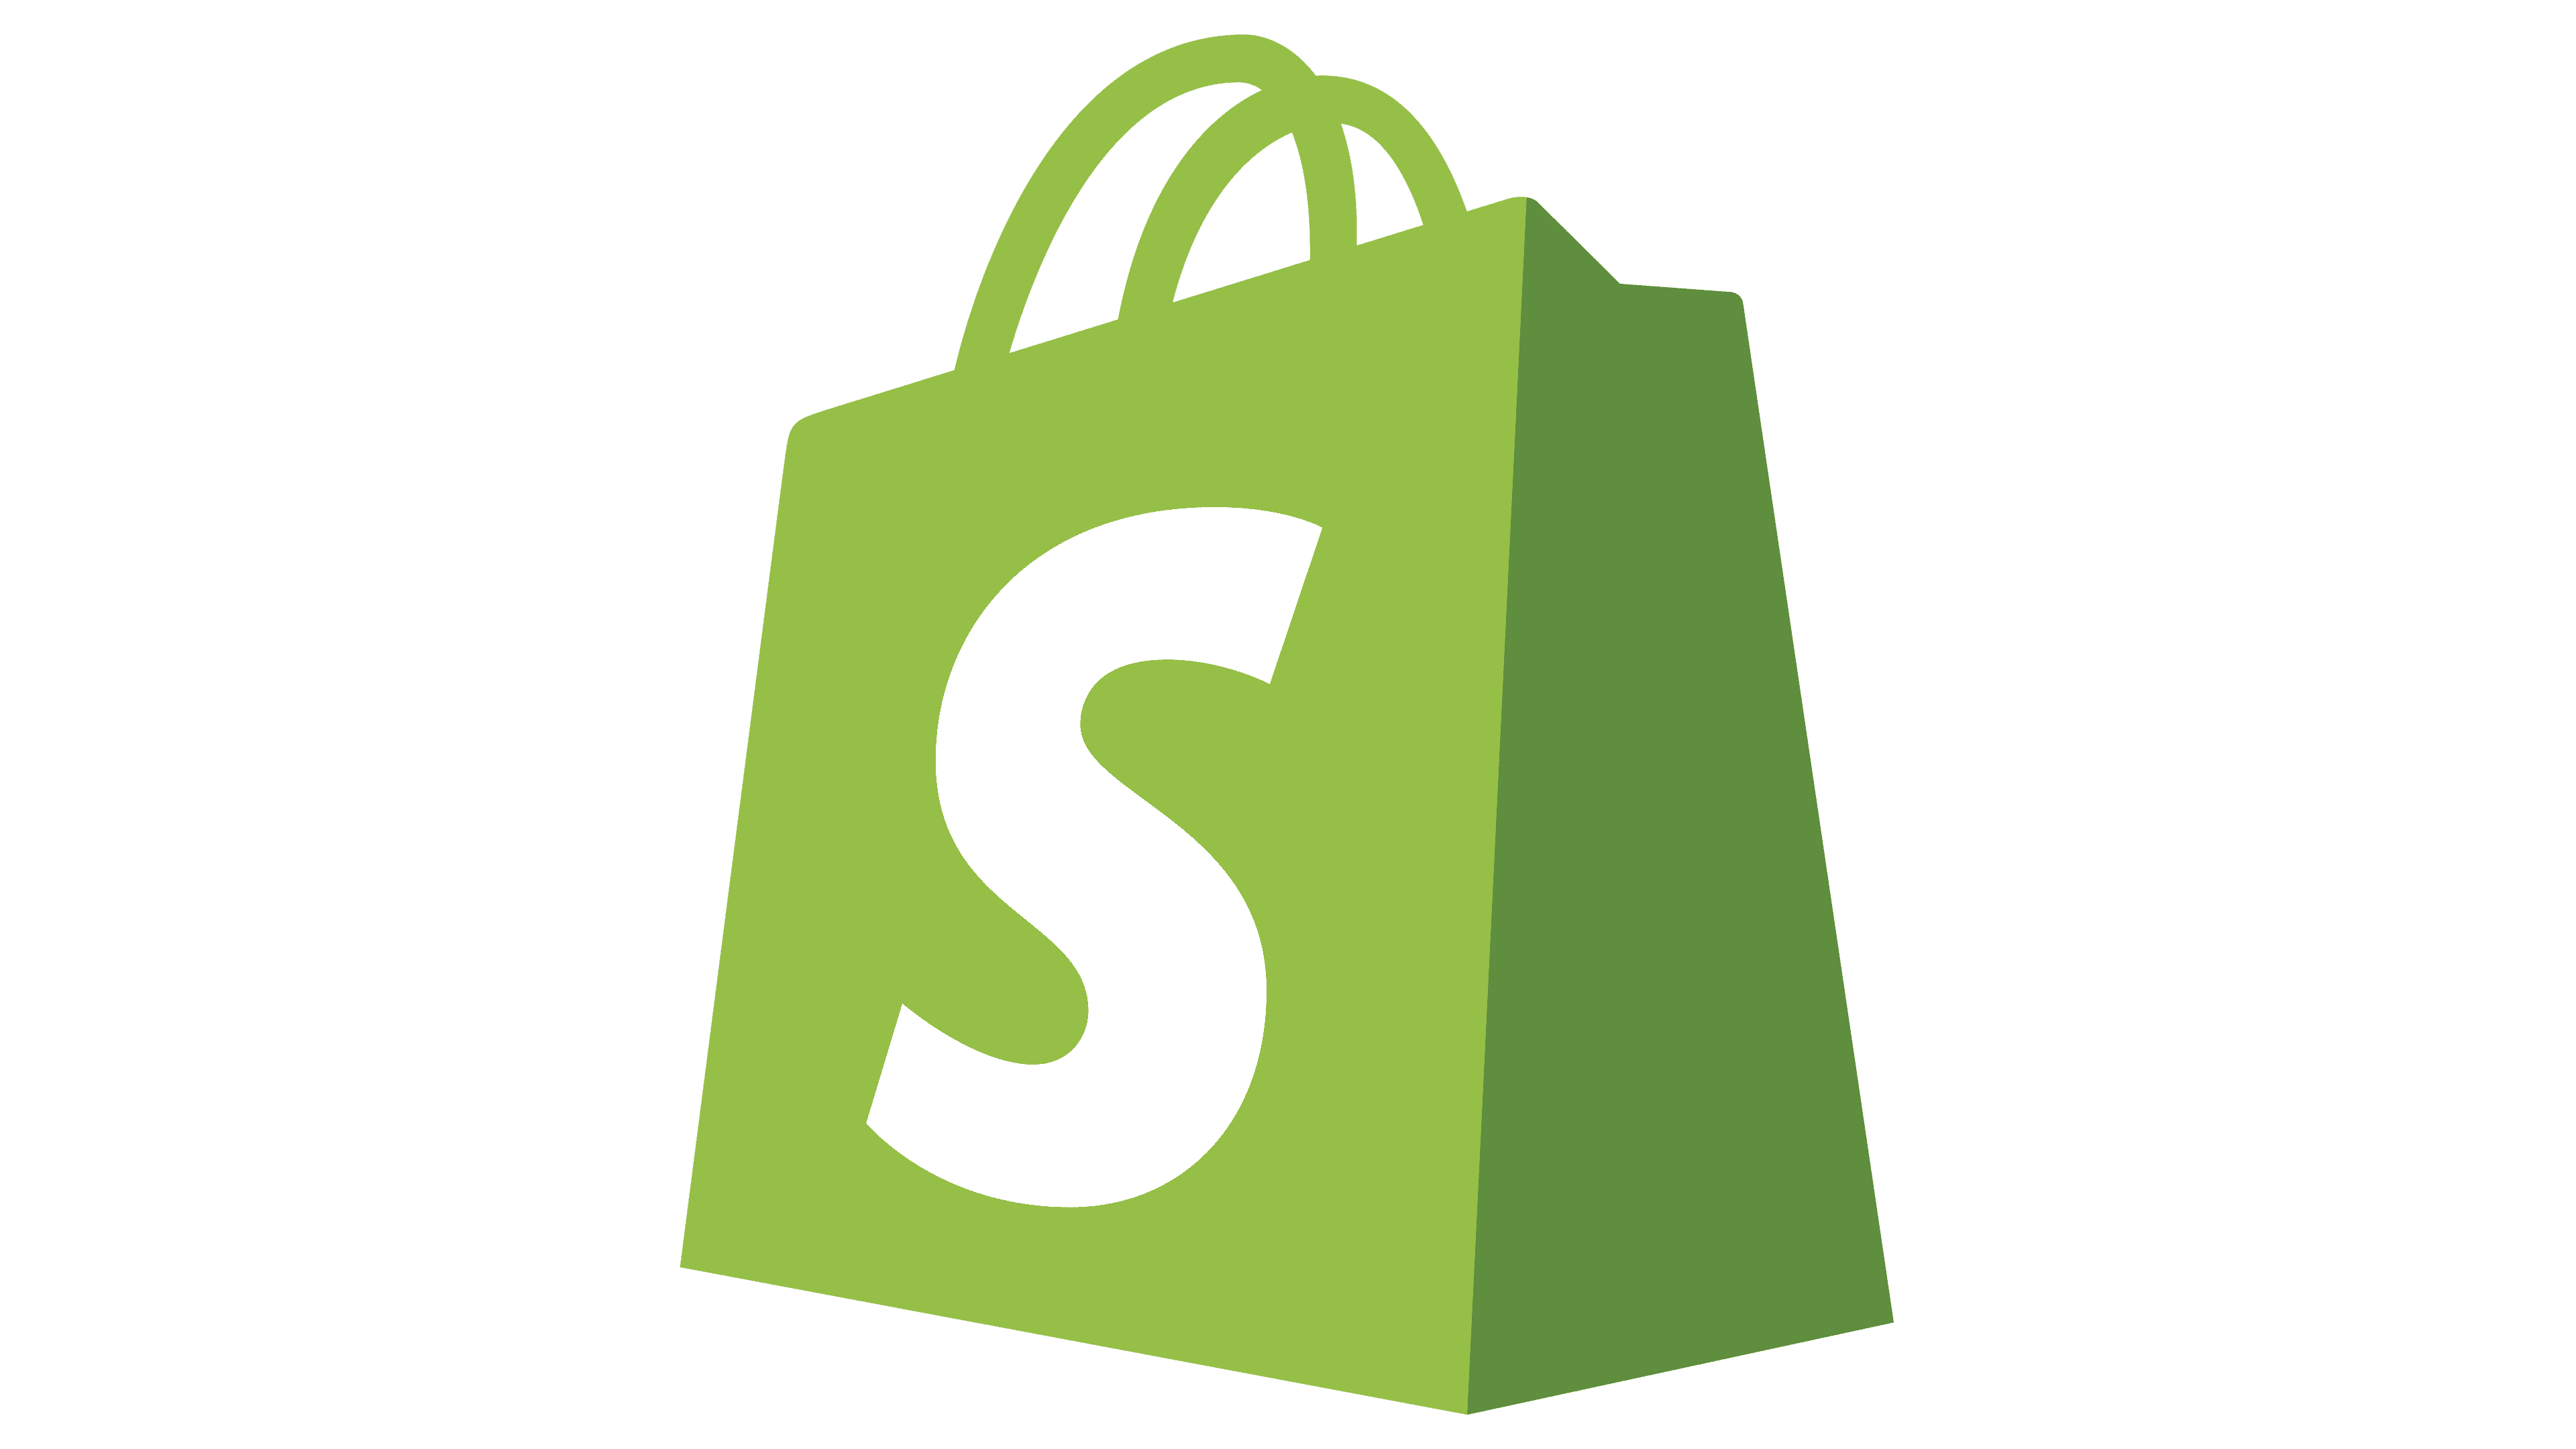 Shopify Logo PNG File